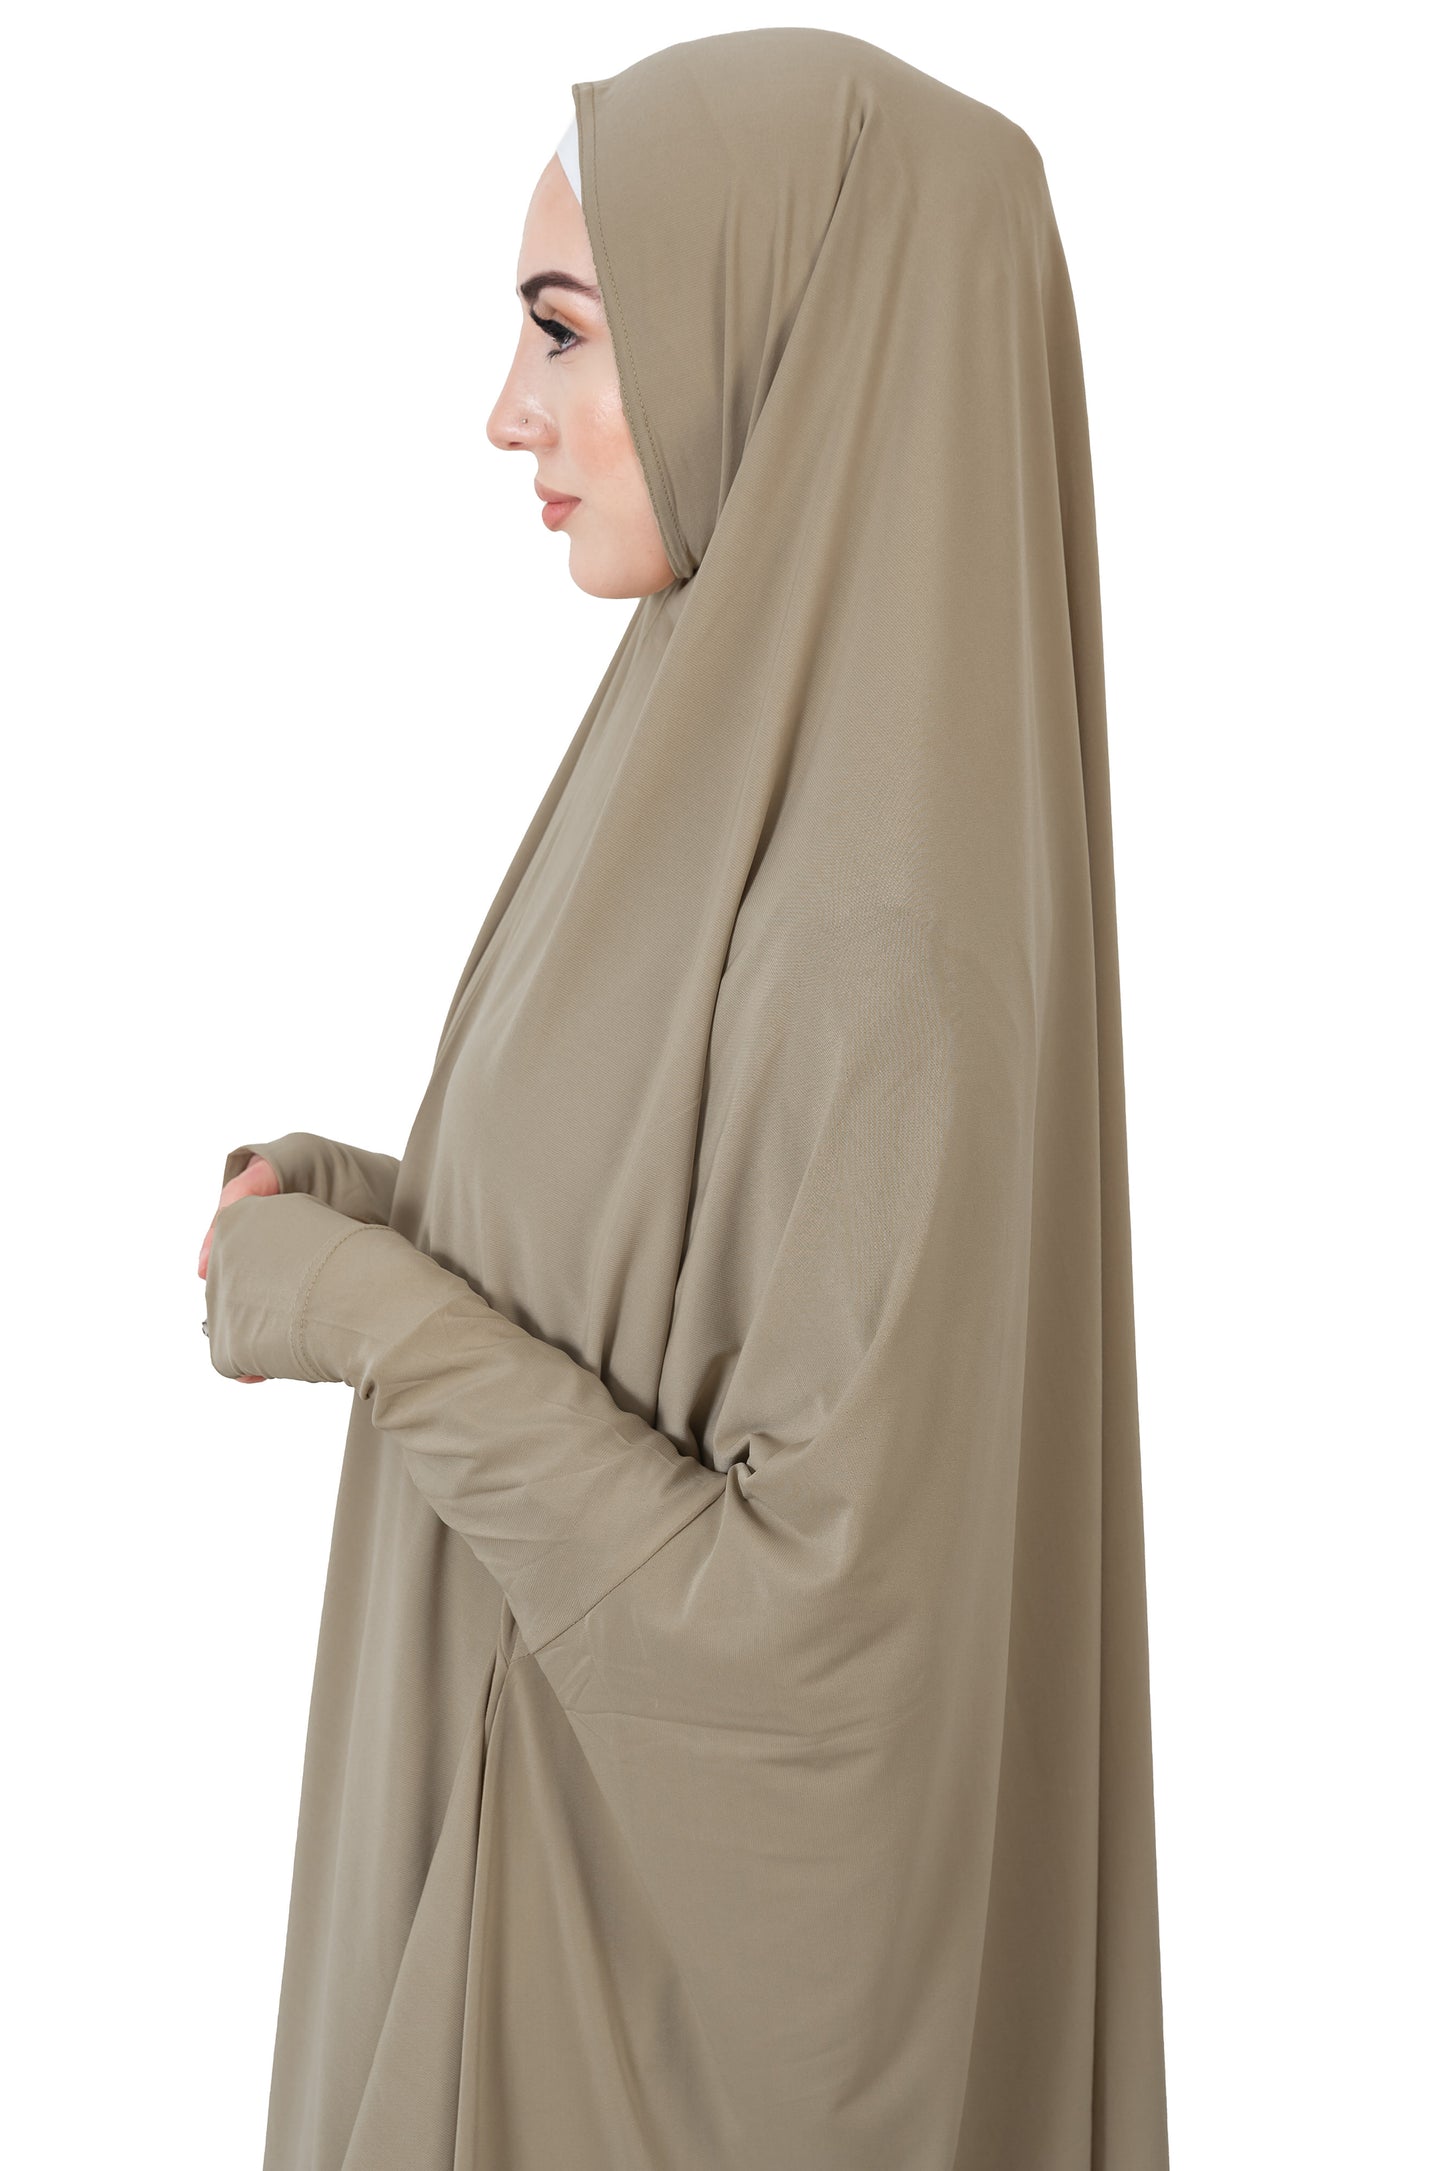 Long Sleeved Jelbab in Surrey Beige